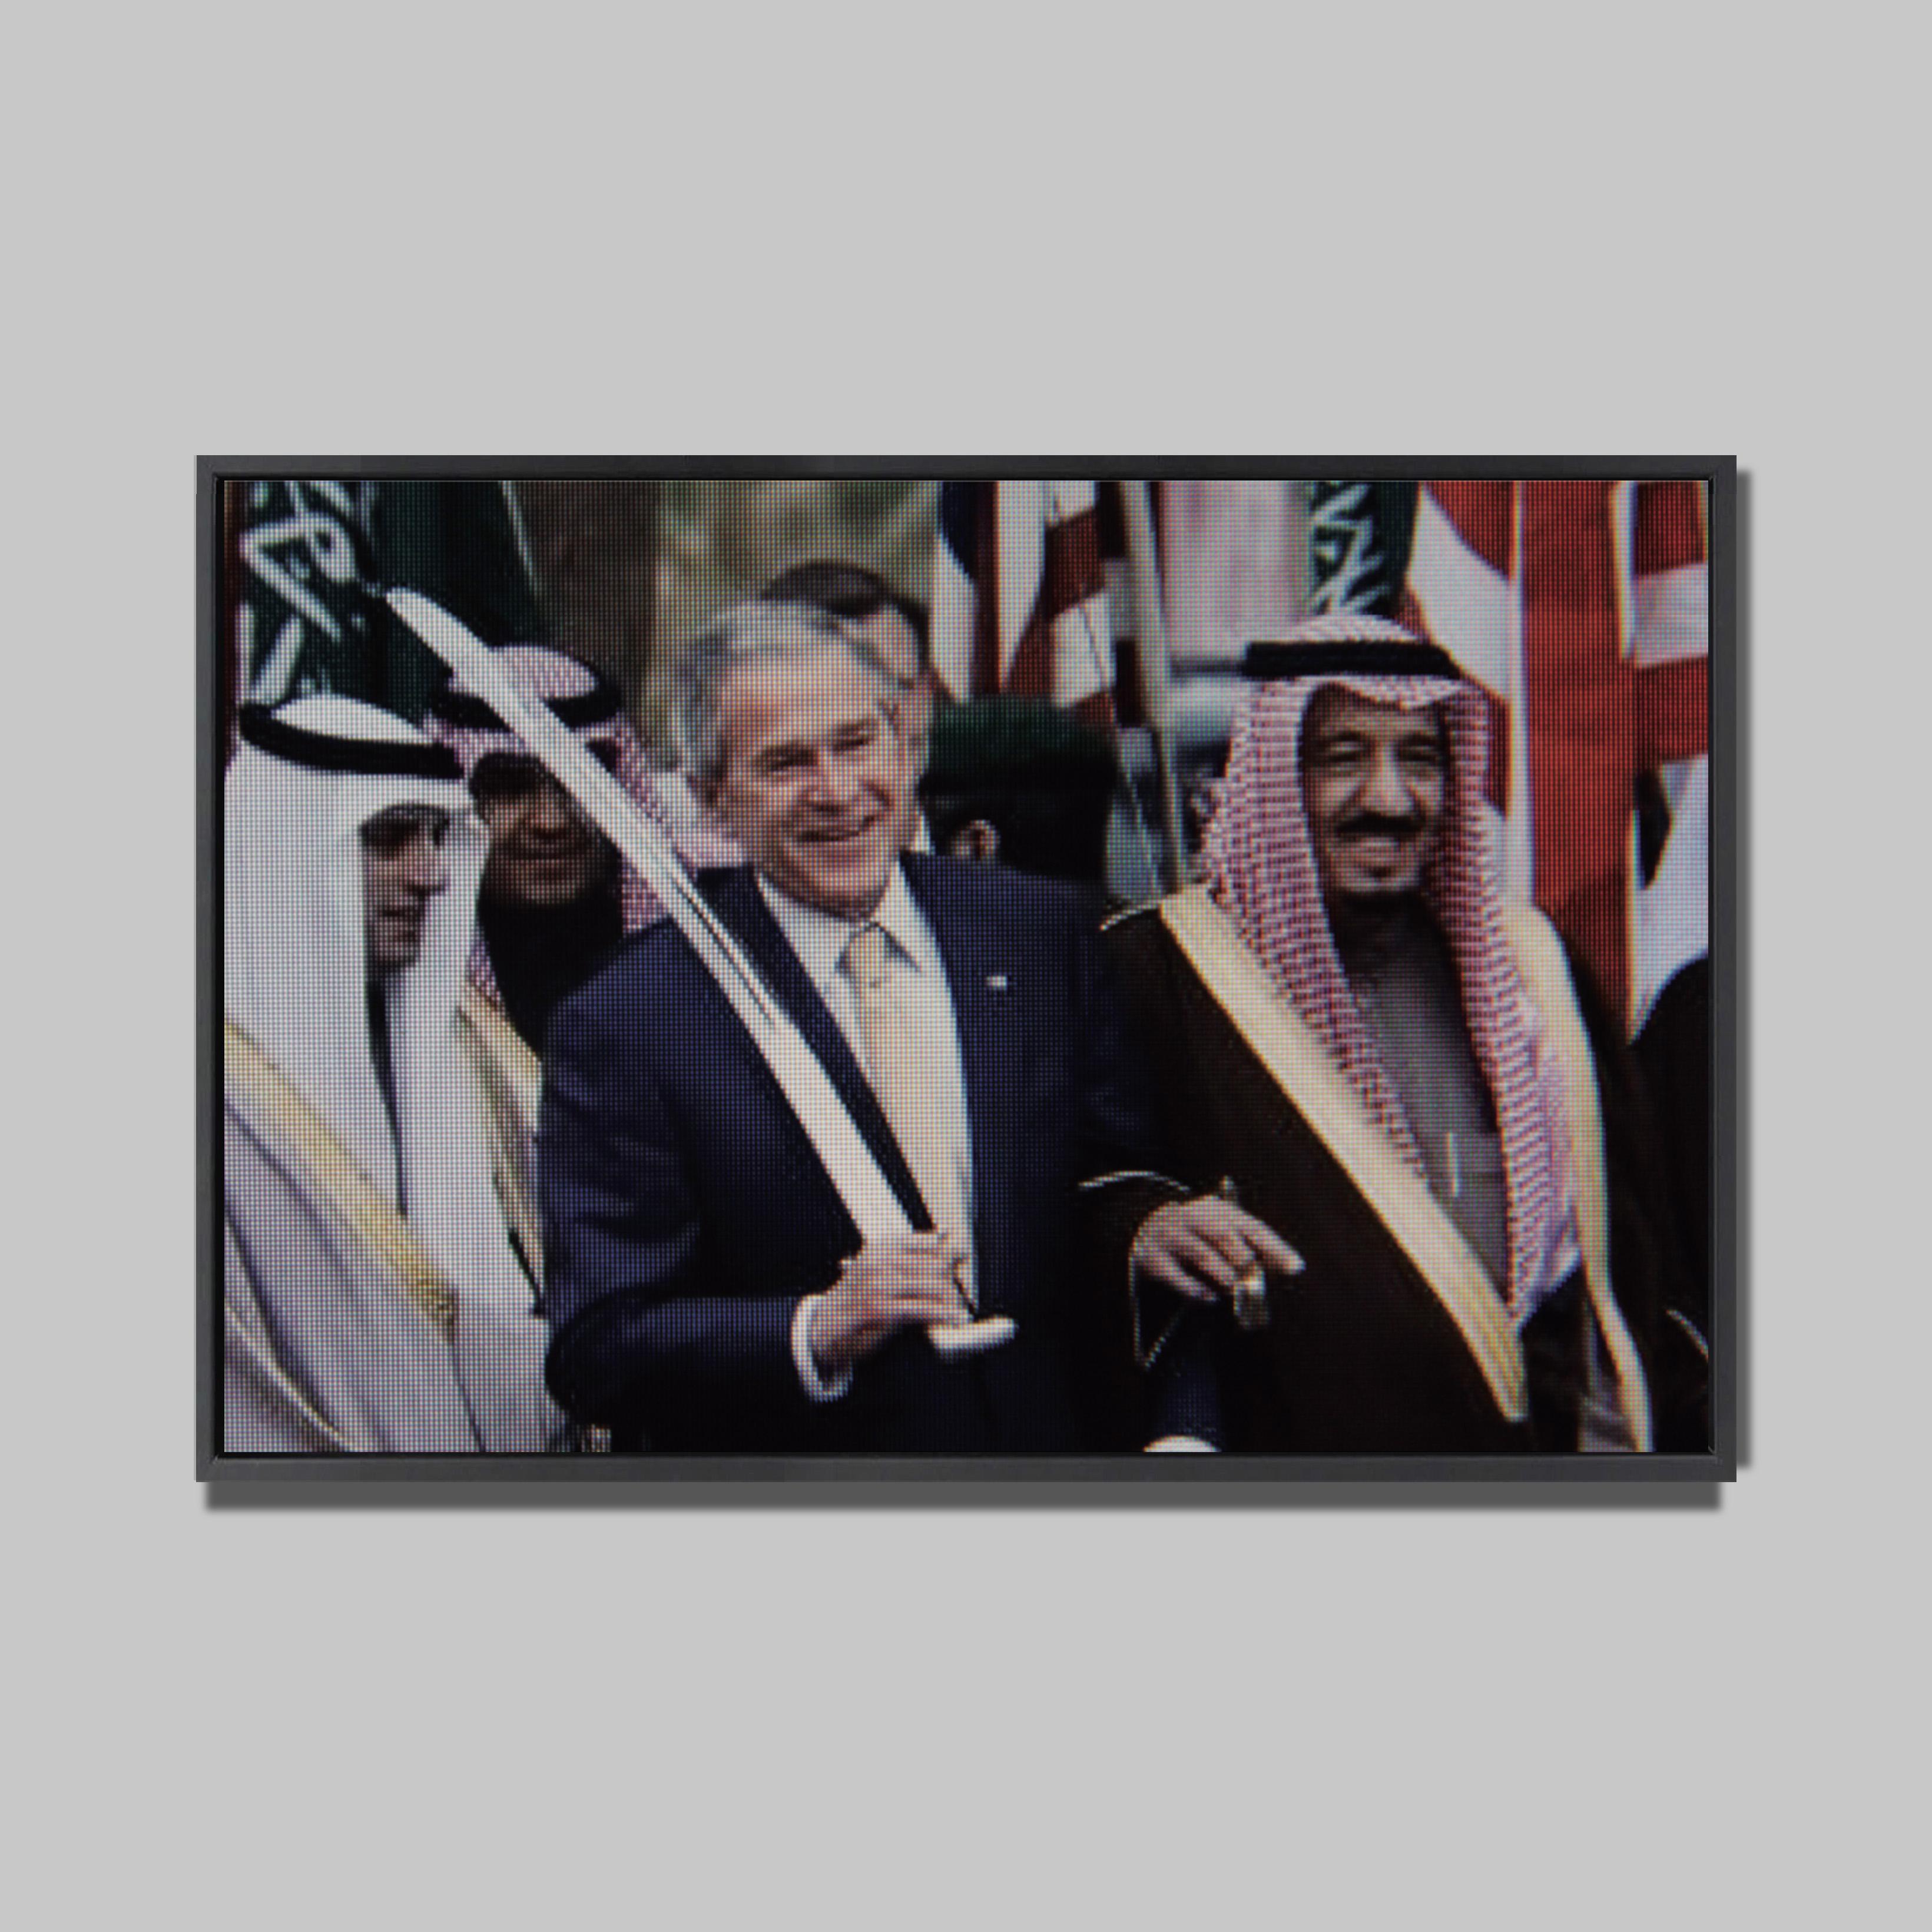 Bush et LEpée d'Arabie
Radar Org, 2009 
Photographie sur aluminium  
180 x 120 cm